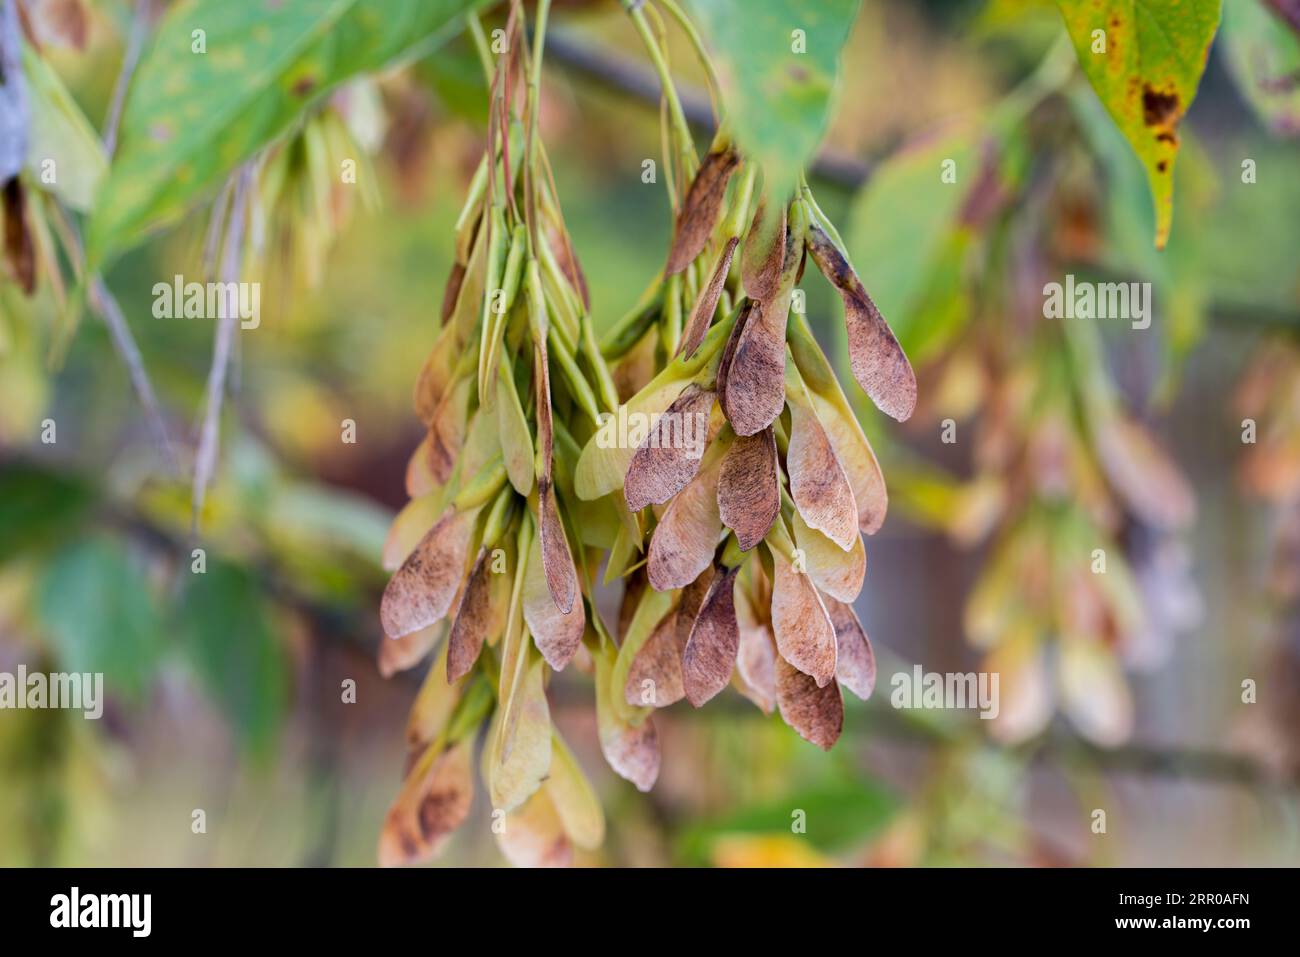 Acer negundo, box elder seeds on branch closeup selective focus Stock Photo